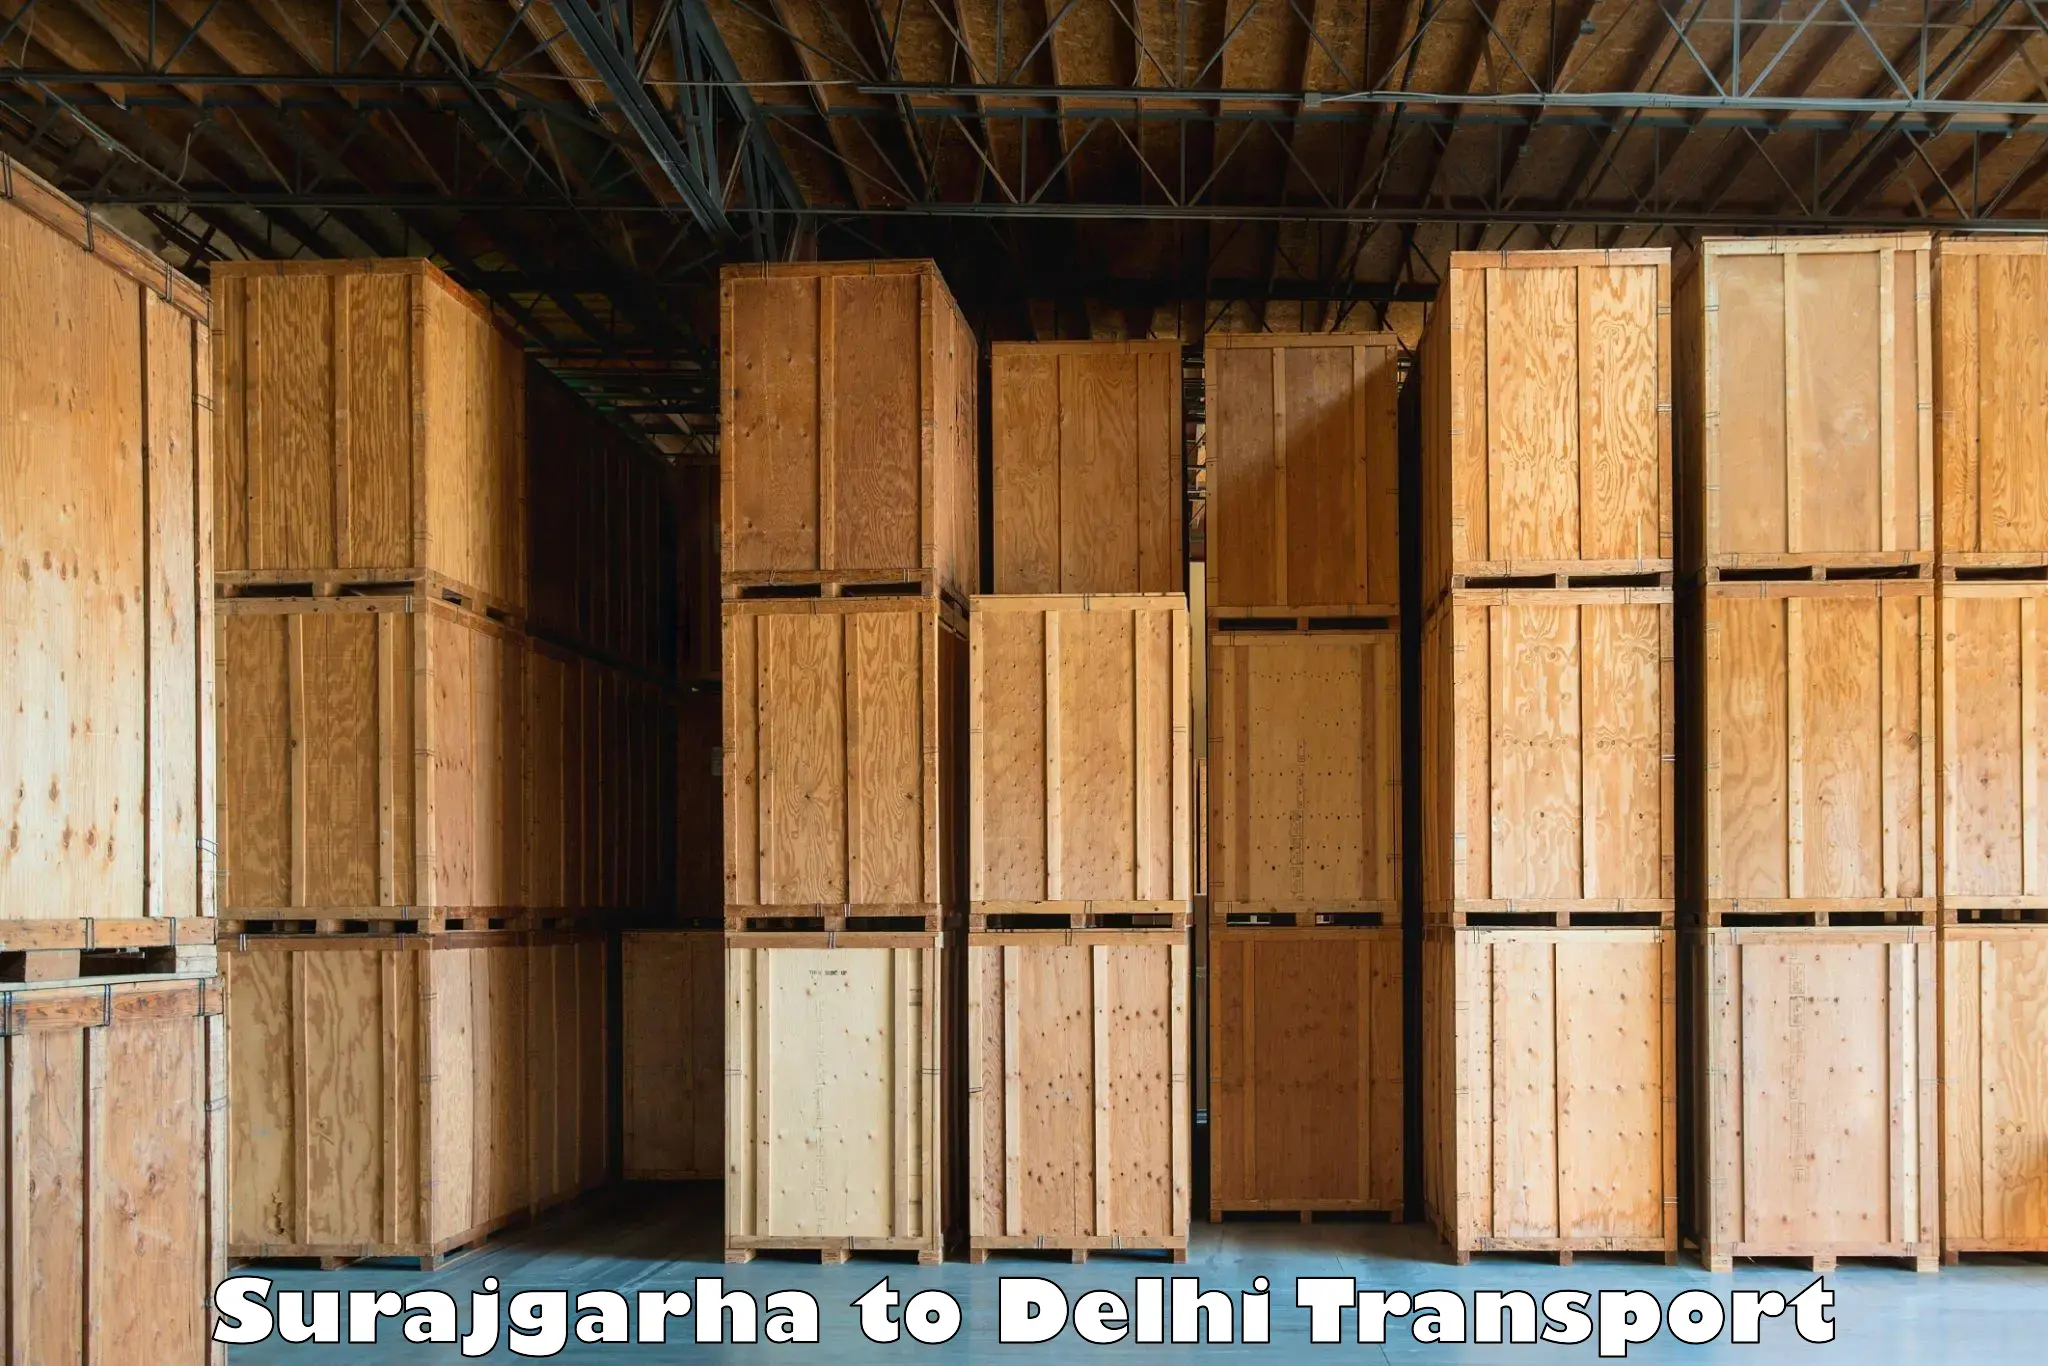 Interstate transport services Surajgarha to East Delhi